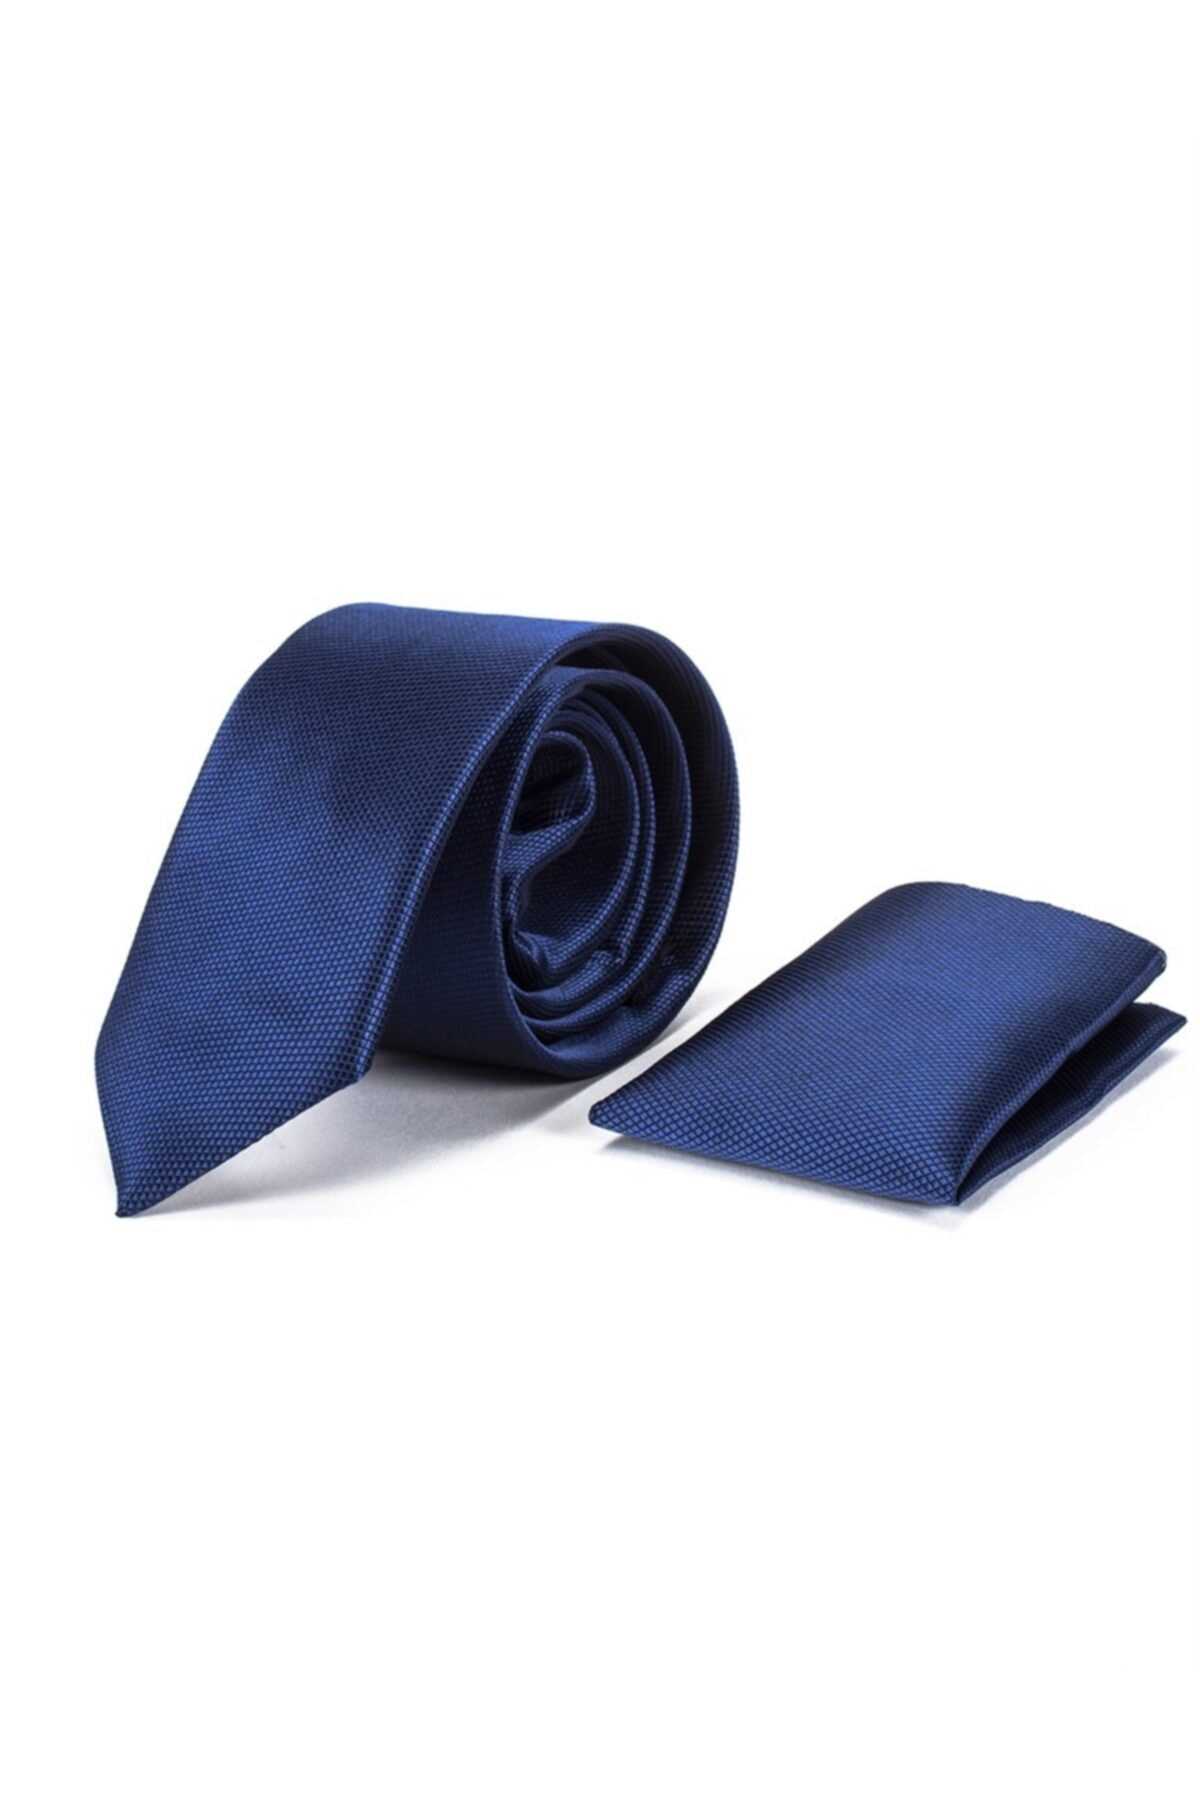 کراوات مردانه طرح دار شیک Tudors رنگ لاجوردی کد ty33025284